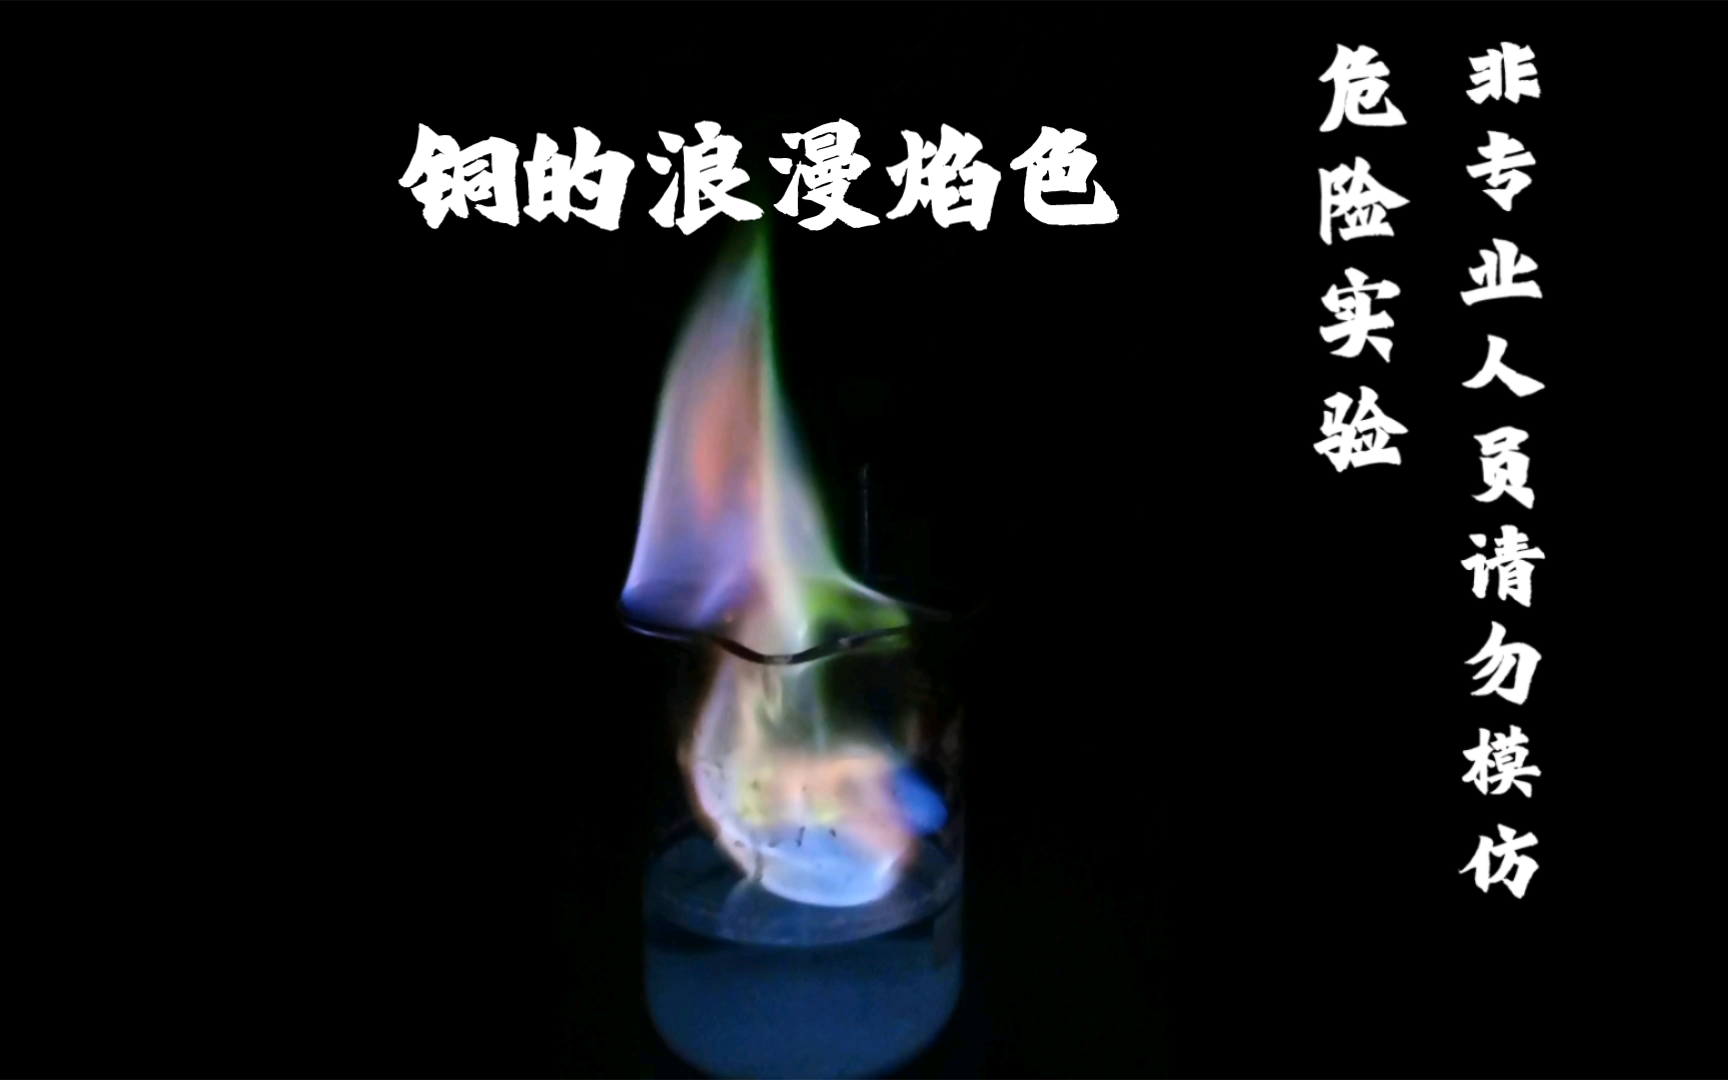 硫酸铜:火焰燃烧的绚烂